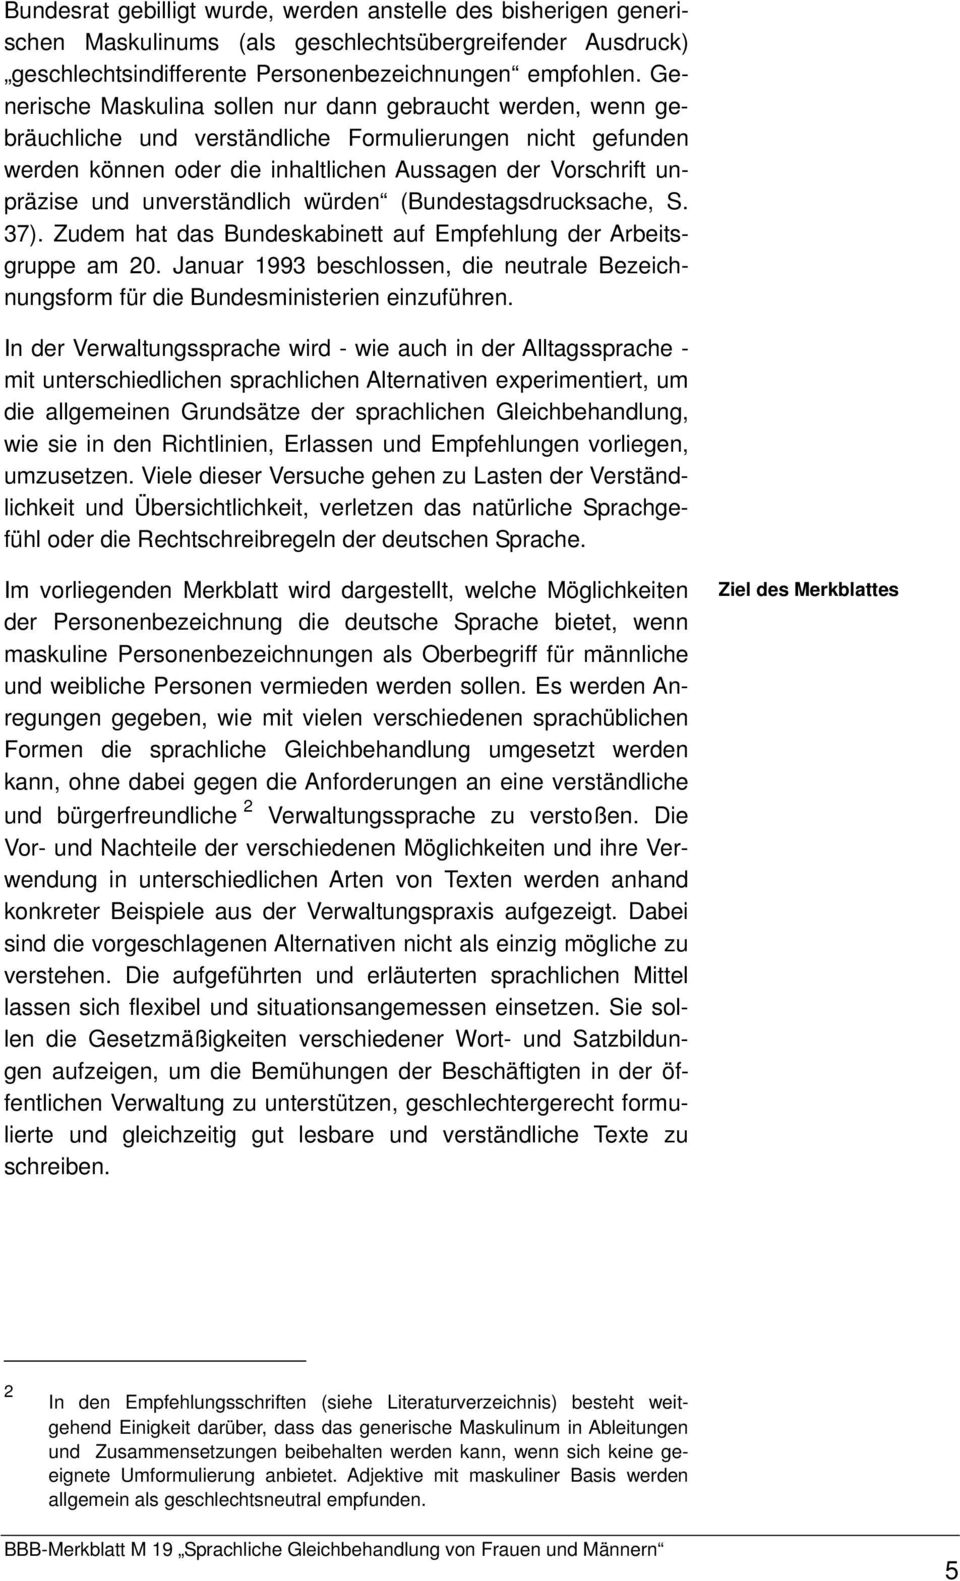 unverständlich würden (Bundestagsdrucksache, S. 37). Zudem hat das Bundeskabinett auf Empfehlung der Arbeitsgruppe am 20.